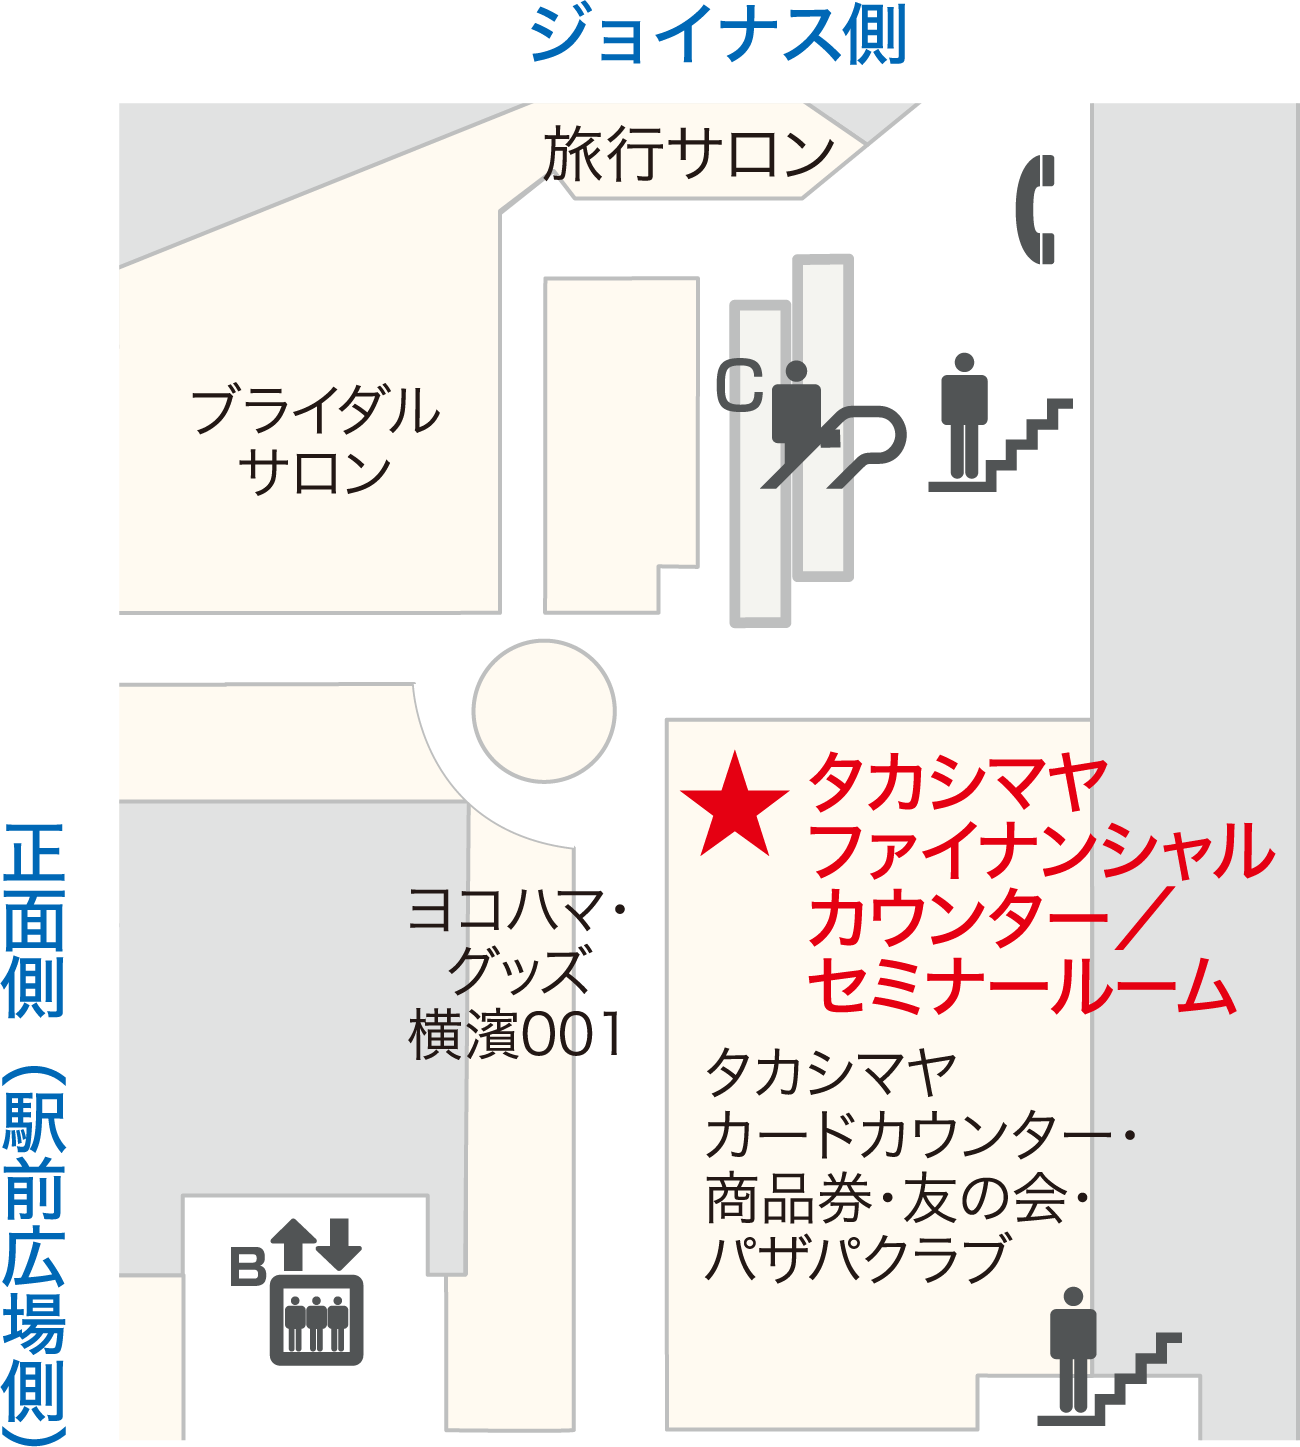 横浜髙島屋7階 タカシマヤファイナンシャル カウンター